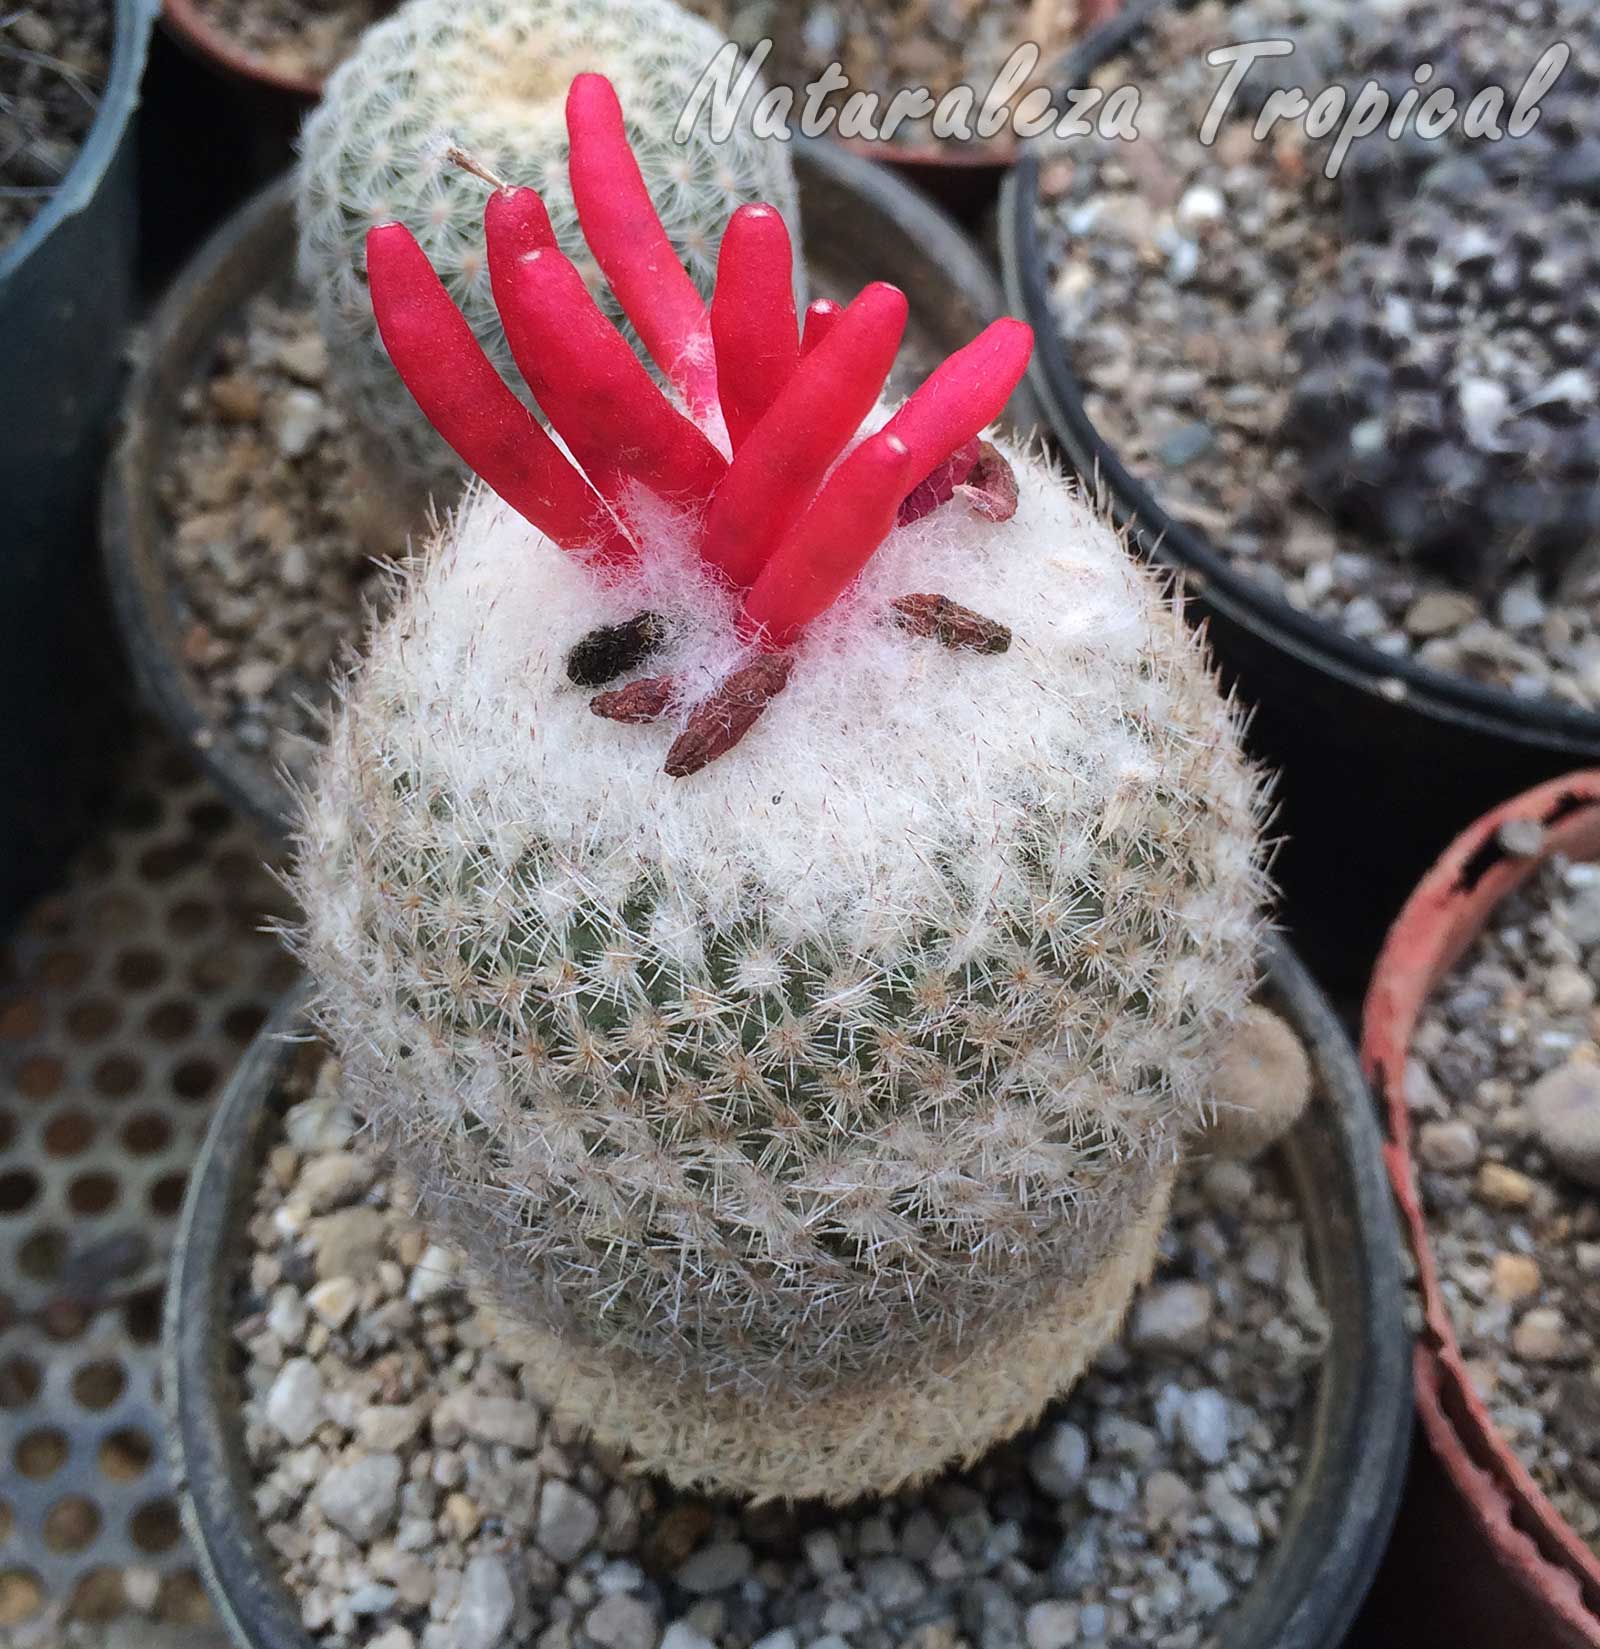 Vista del cactus botón con frutos en el ápice, Epithelantha micromeris